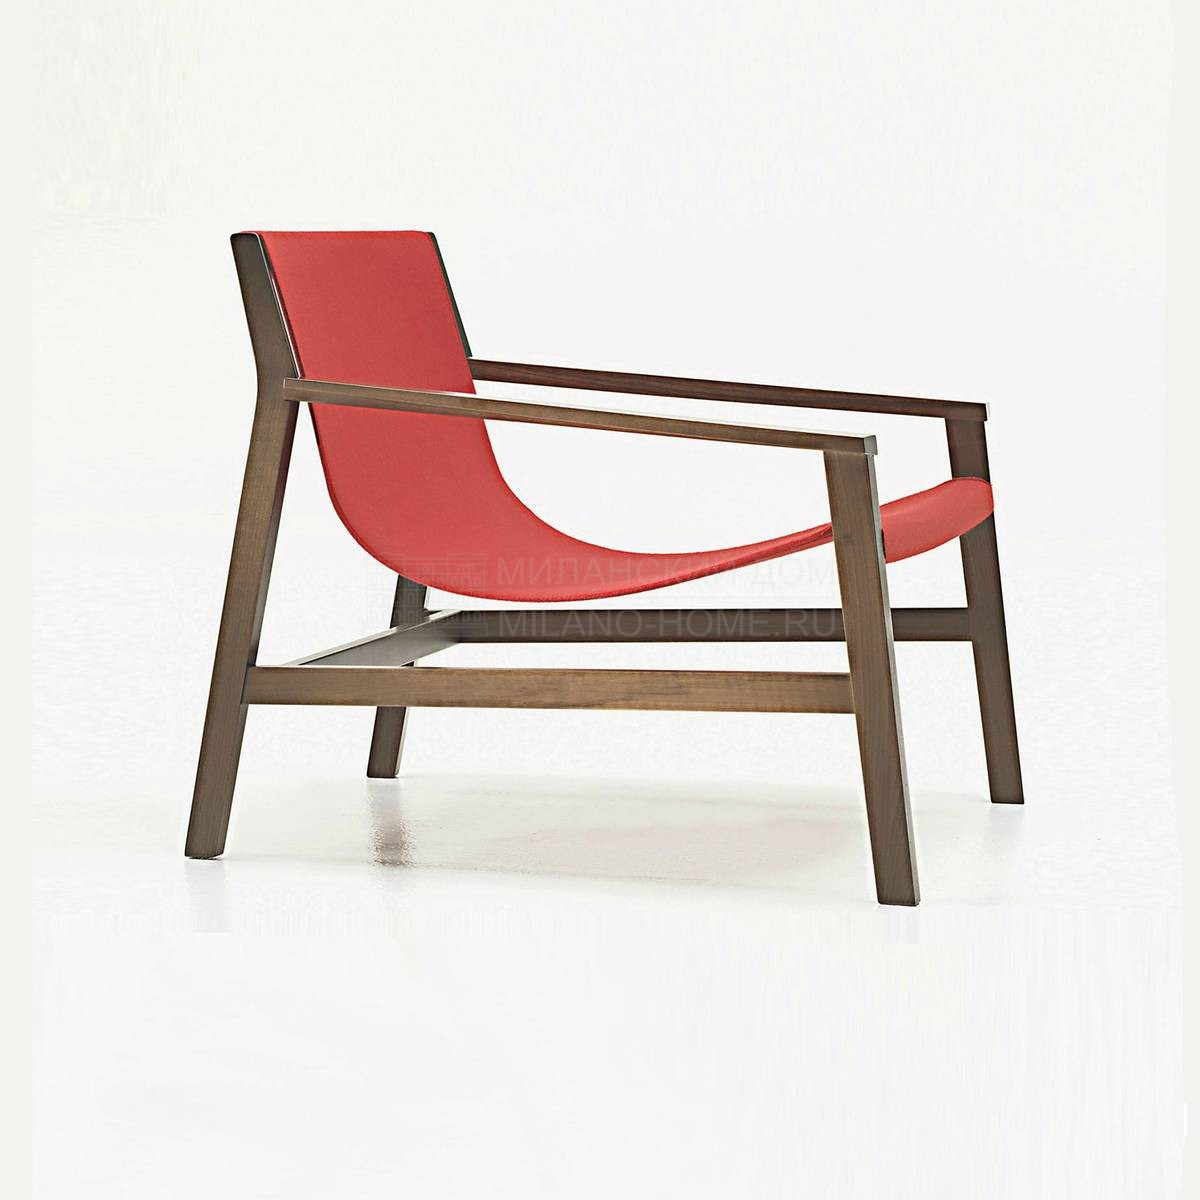 Кресло Sdraio armchair из Италии фабрики LIVING DIVANI